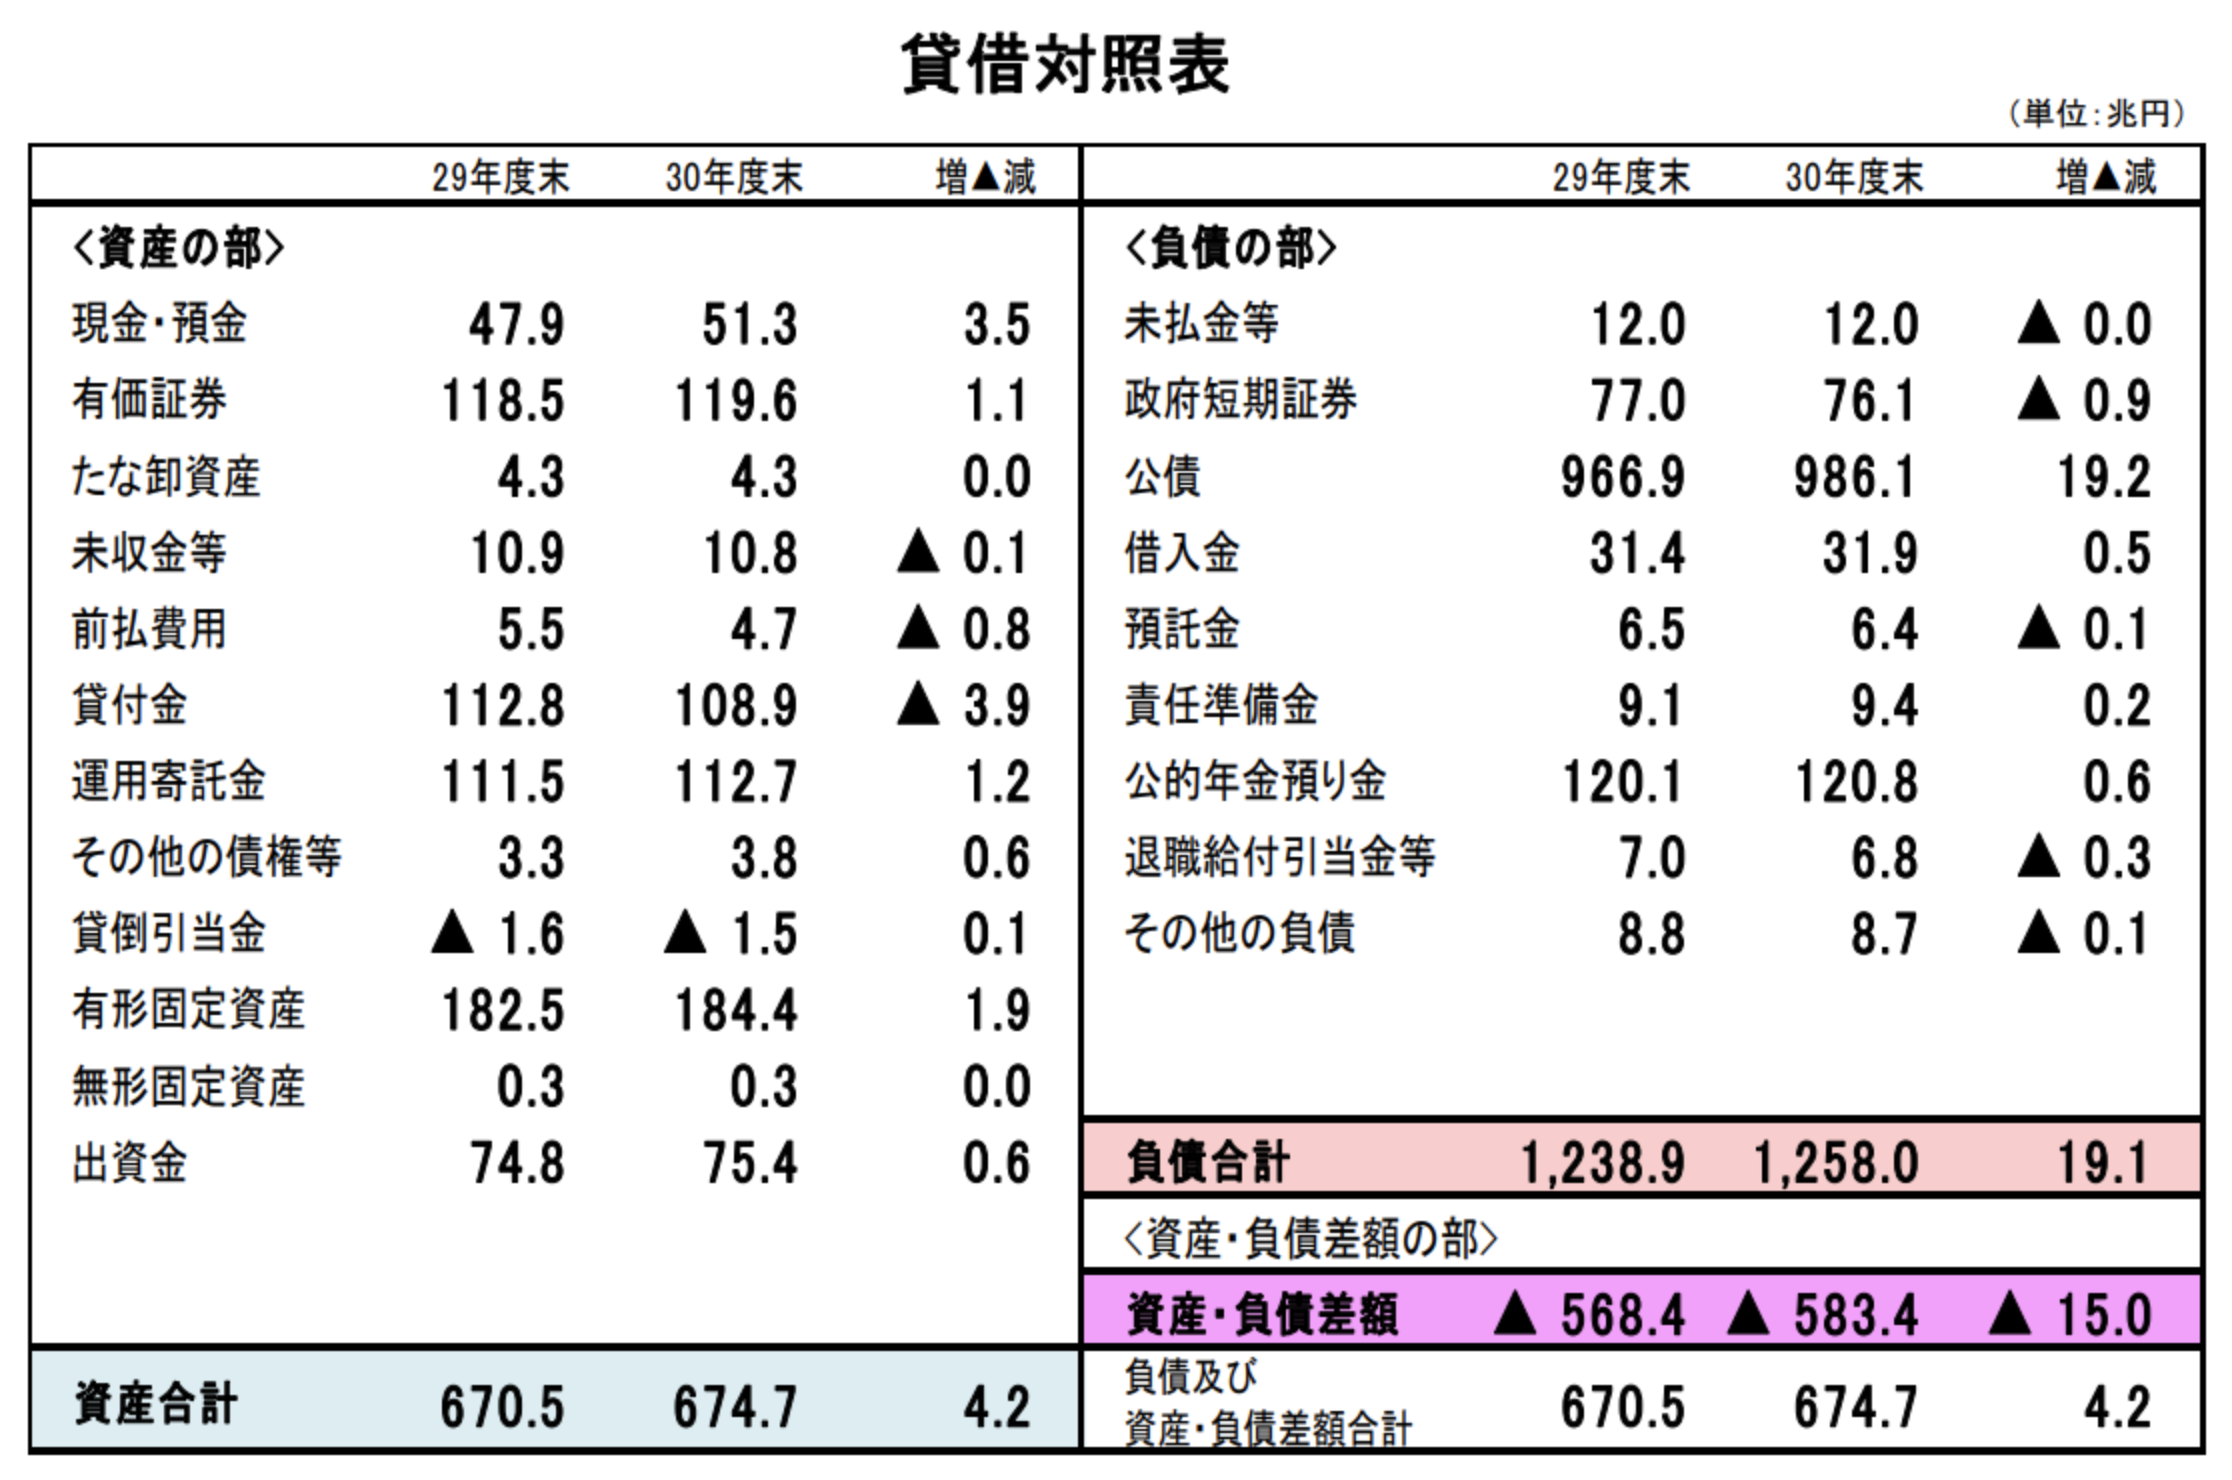 日本の財務諸表